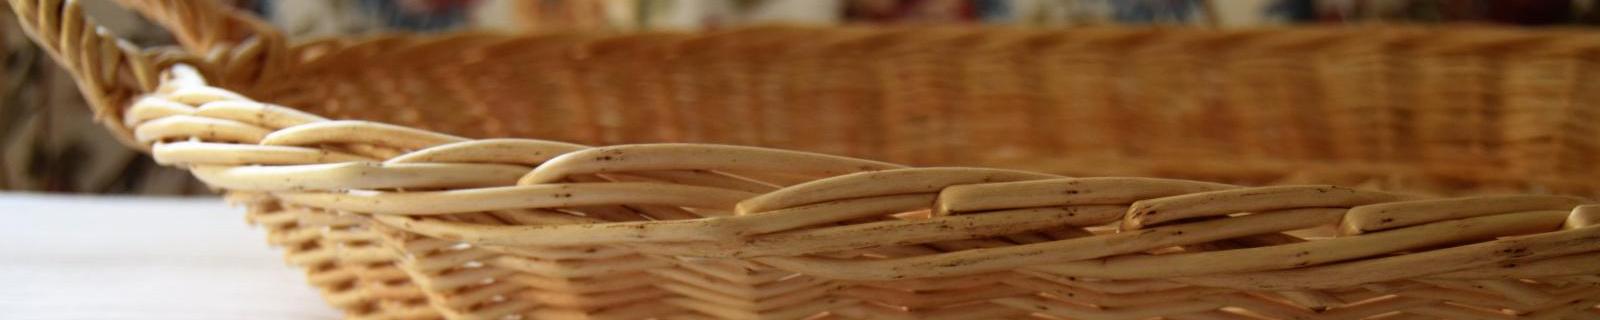 Organiza tu plancha con las mejores cestas artesanales hechas en Salamanca